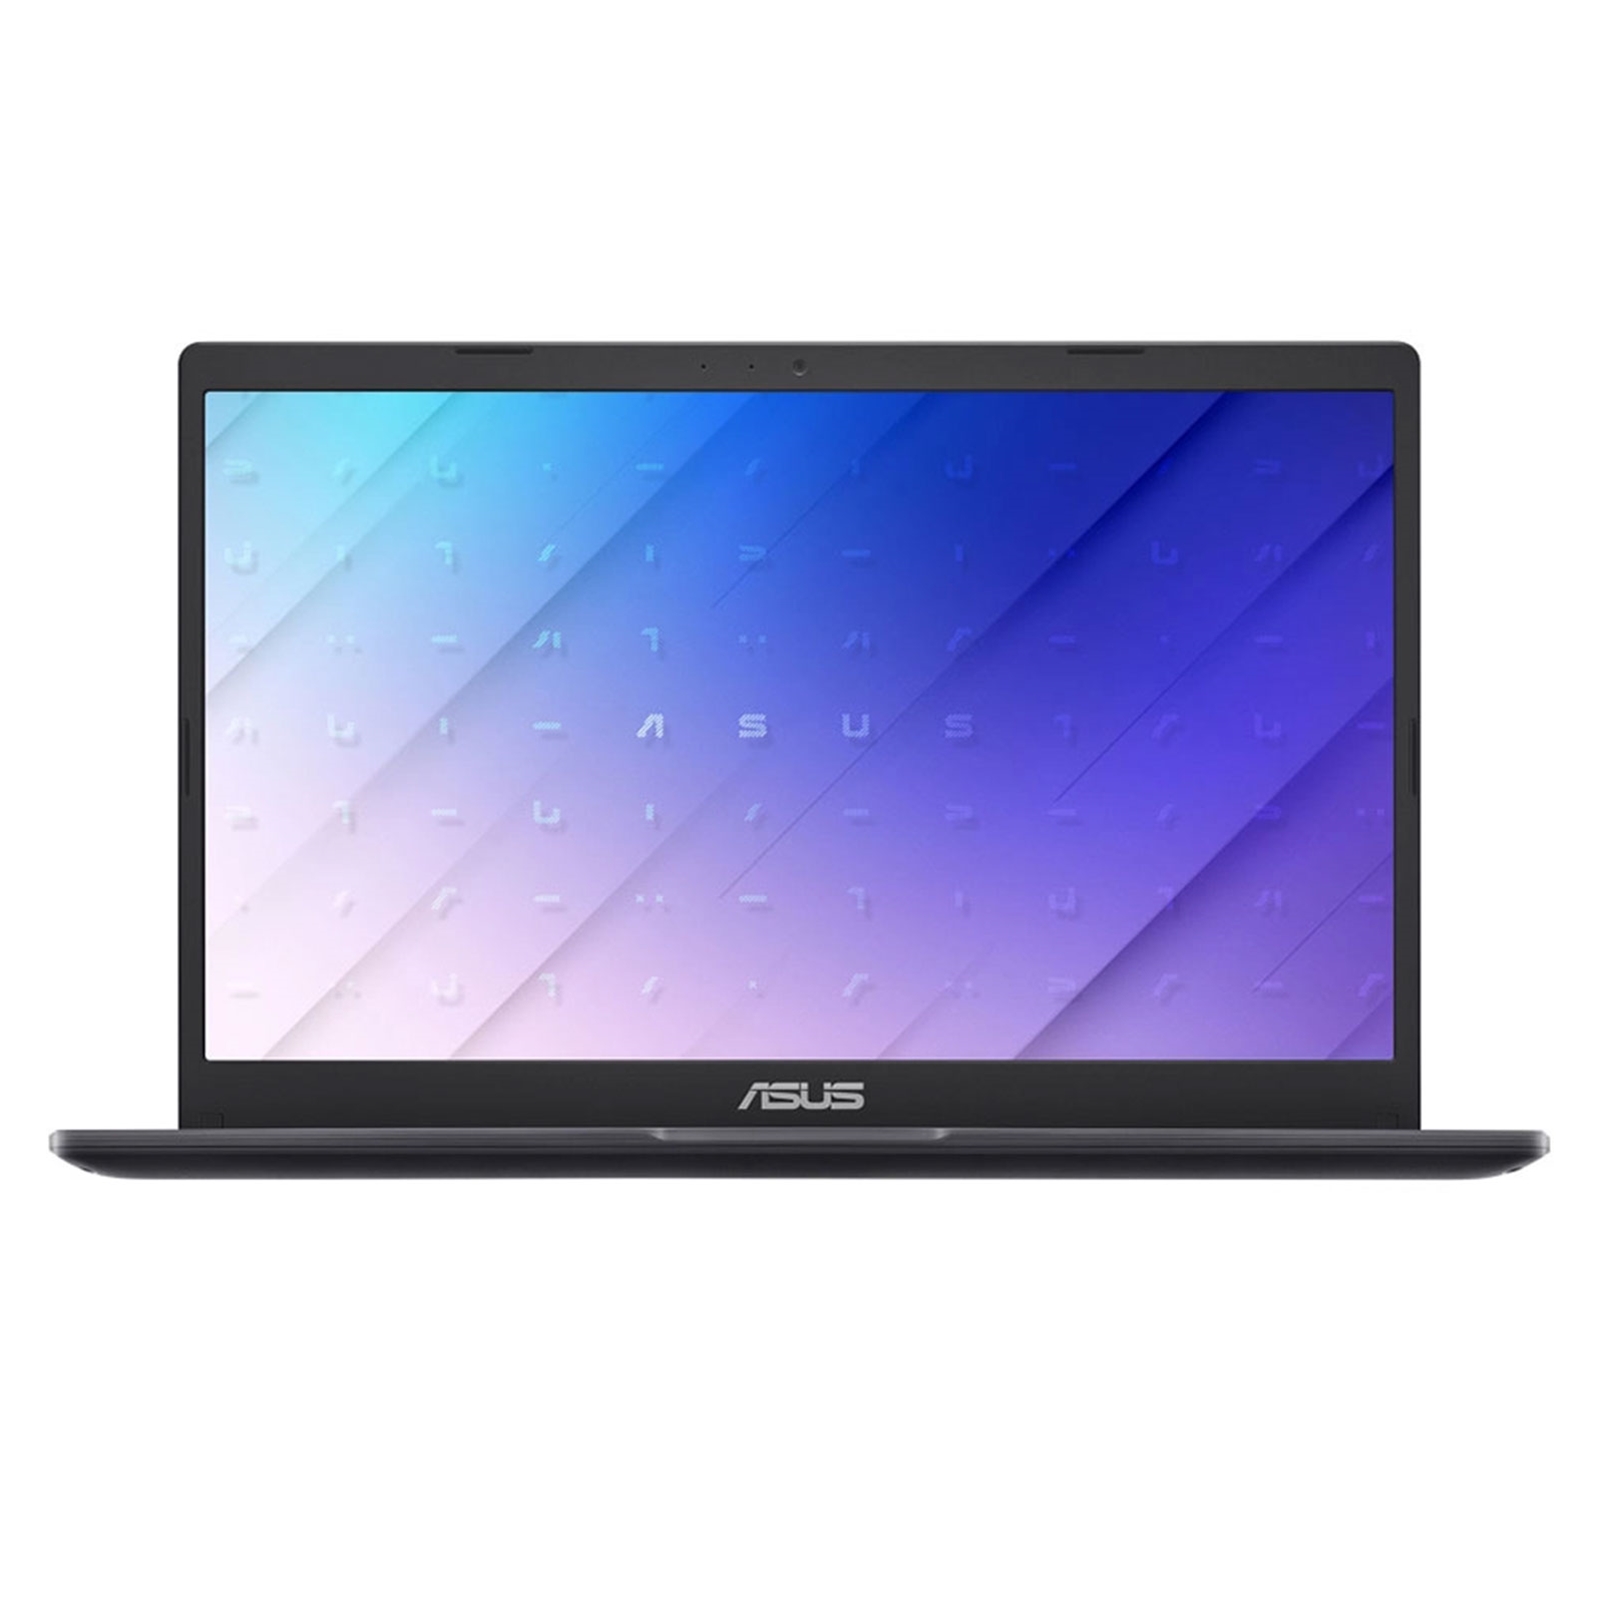 Asus E410MA-EB1123R-3Y Laptop, 14 Inch Full HD 1080p Screen,  Intel Pentium Silver N5030 1.1 GHz, 4GB RAM, 128GB eMMC, Windows 10 Pro with 3 Year Warranty, Blue